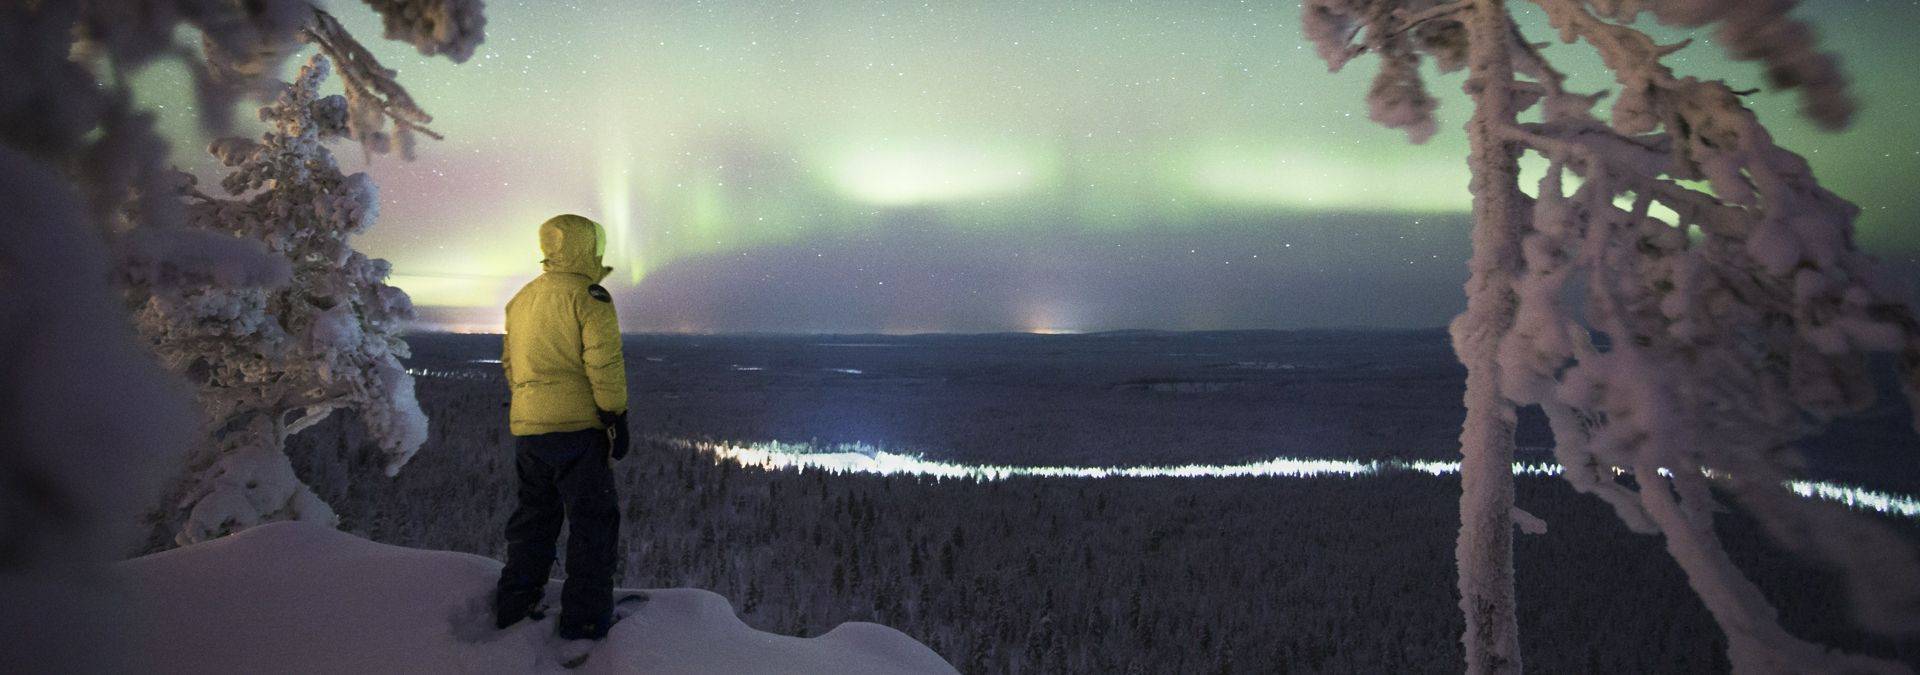 Luosto Northern Lights Dec 2016 Credit Miika Hämäläinen.jpg